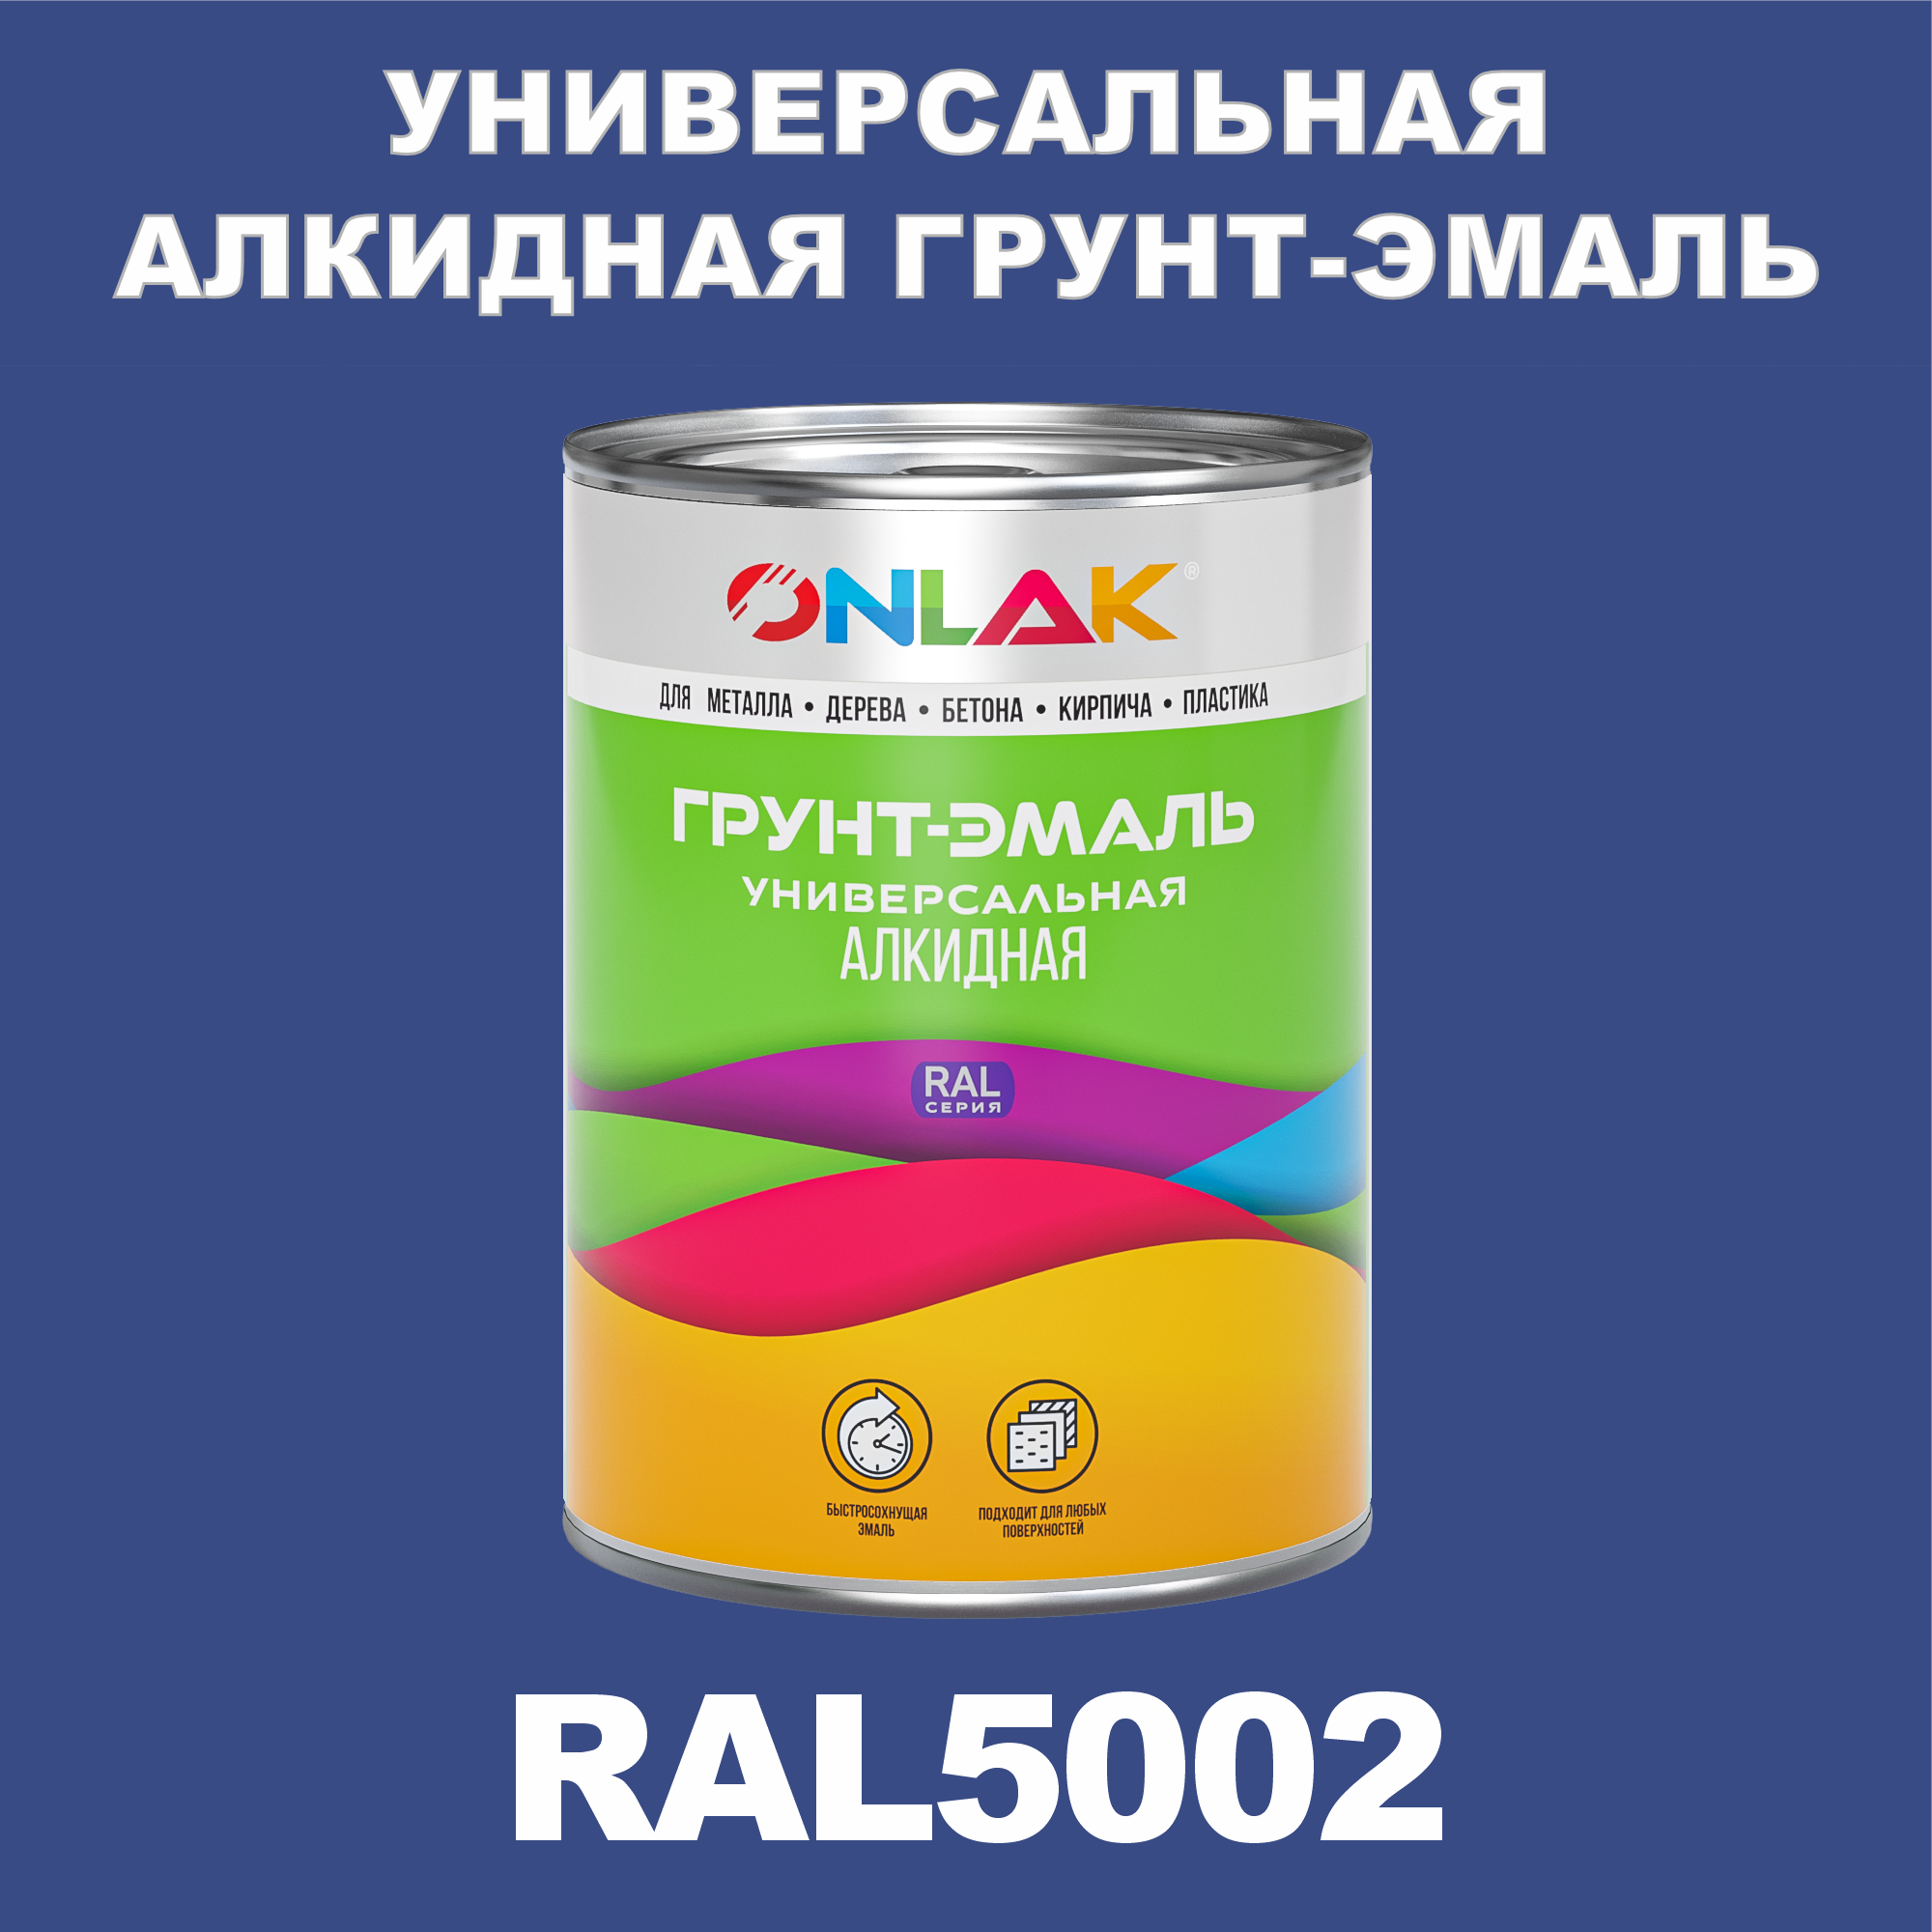 Грунт-эмаль ONLAK 1К RAL5002 антикоррозионная алкидная по металлу по ржавчине 1 кг антикоррозионная грунт эмаль elcon